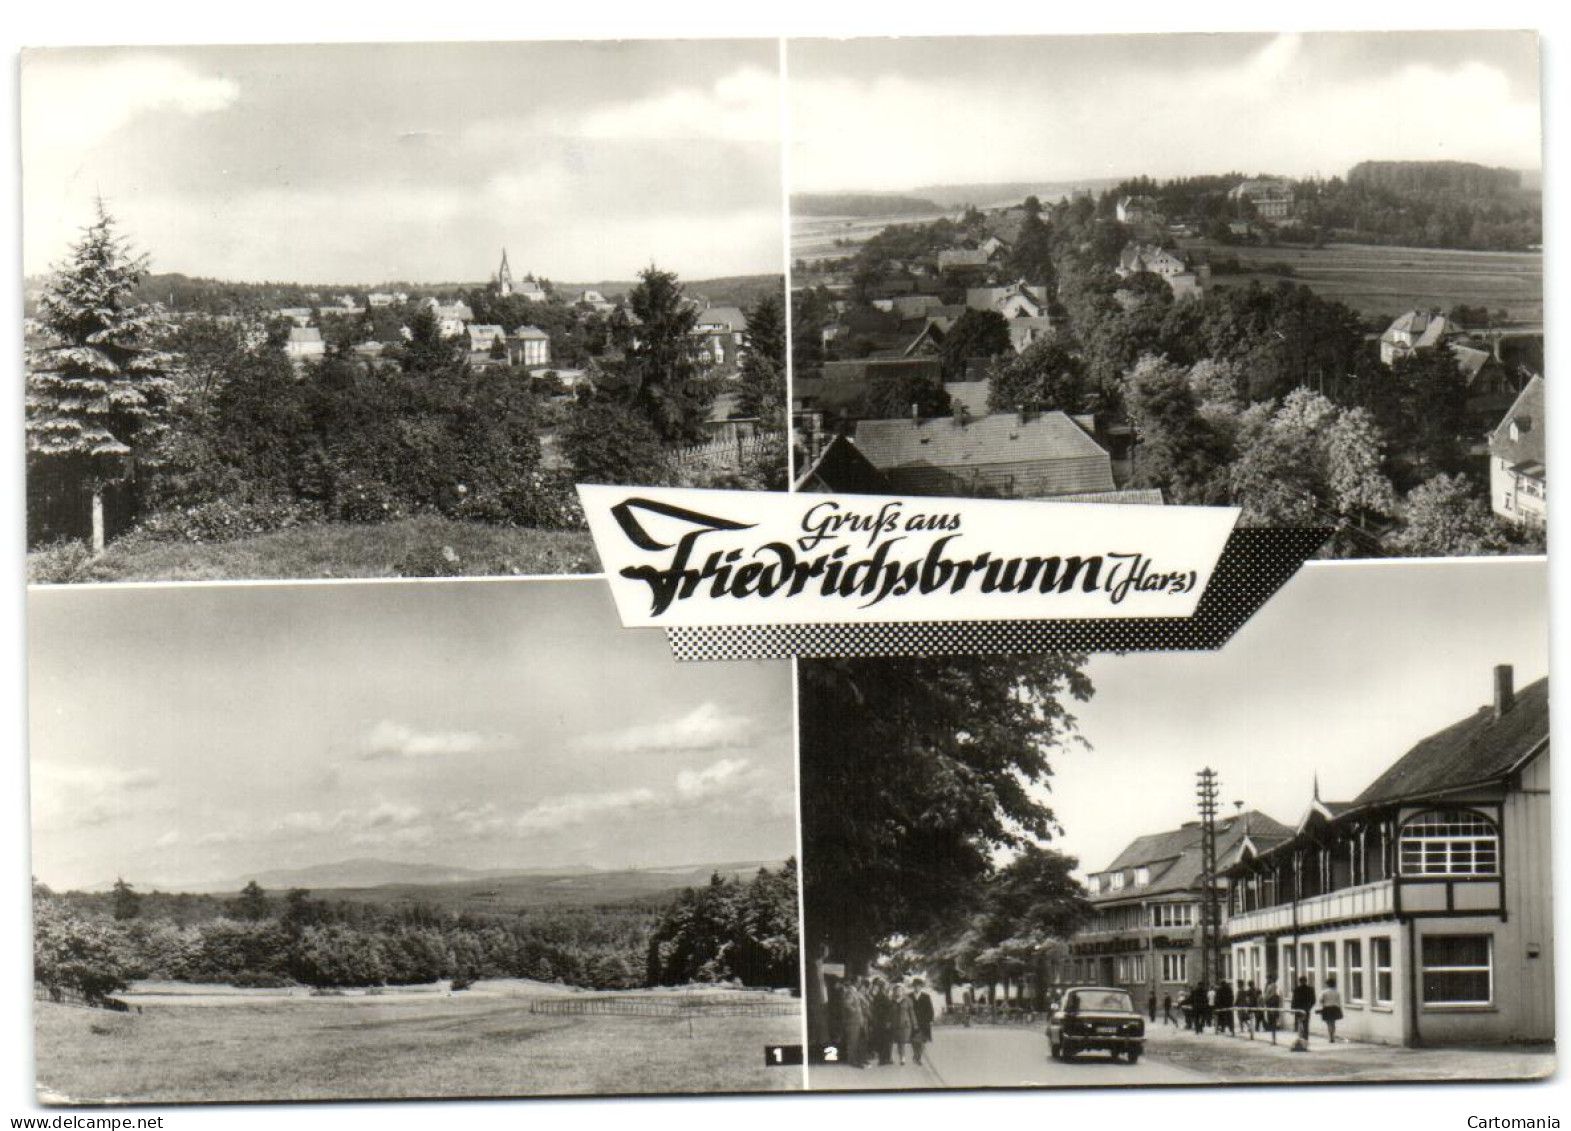 Gruss Aus Friedrichsbrunn (Harz) - Kr. Quedlinburg - Wanzleben